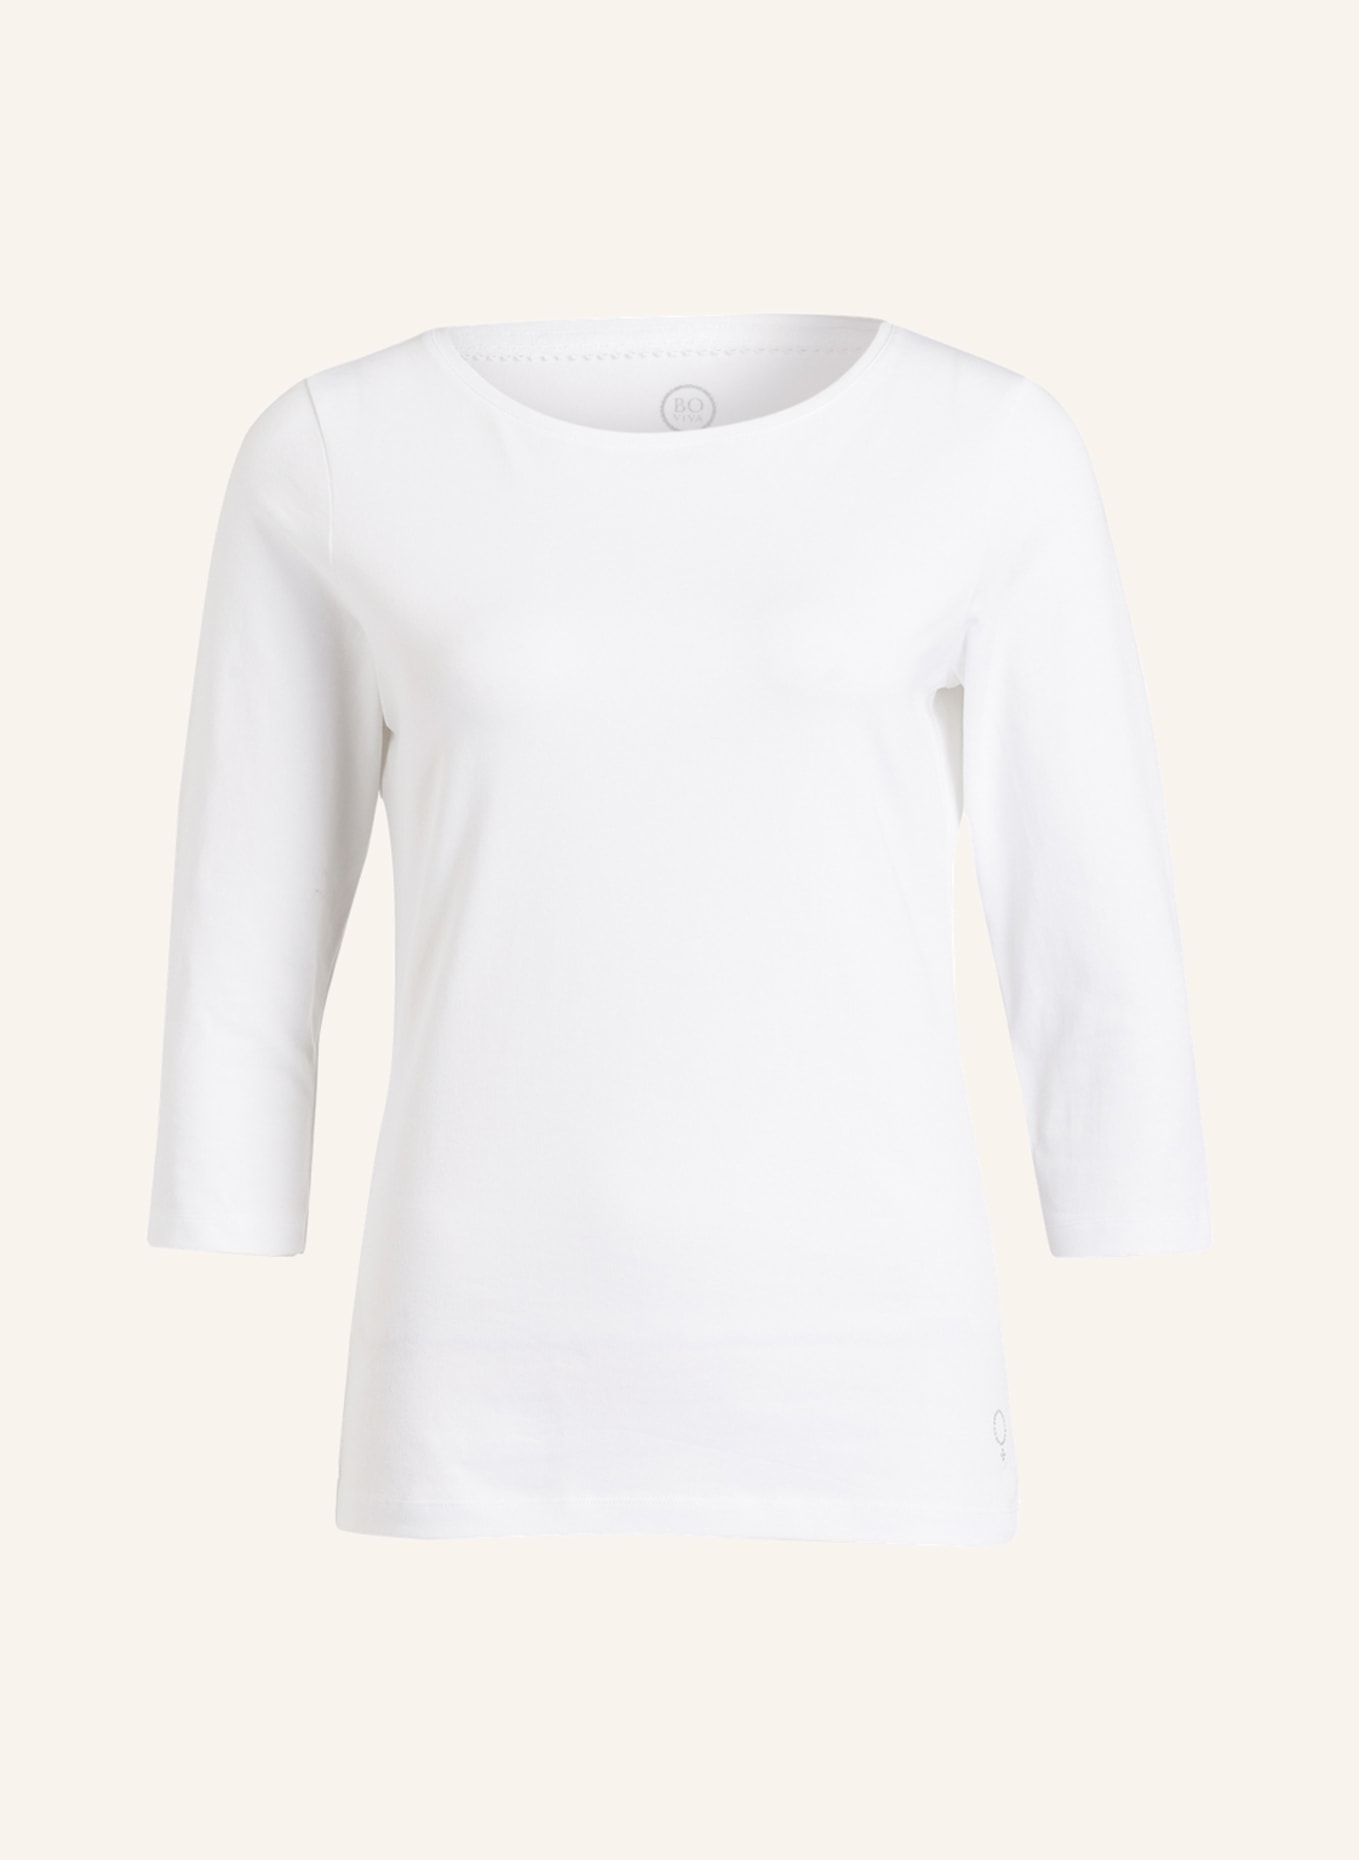 BOVIVA Shirt mit 3/4-Arm, Farbe: 100 WHITE (Bild 1)